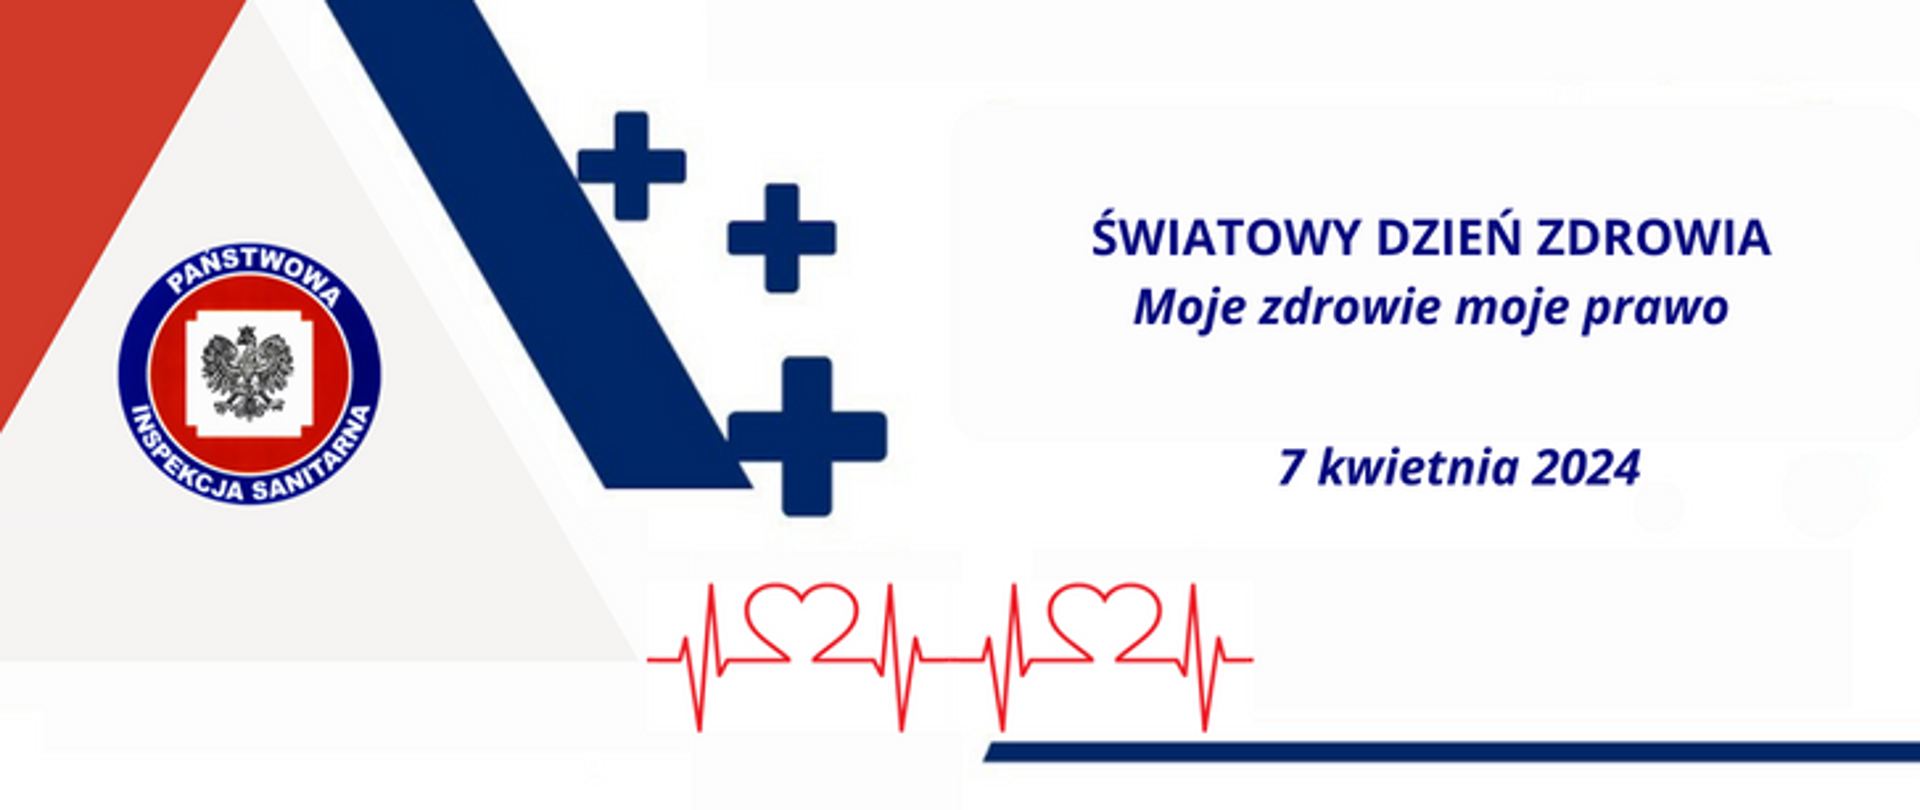 Na jasnym tle po lewej stronie widoczne logo Państwowej Inspekcji Sanitarnej, po prawej stronie widoczny napis Światowy Dzień Zdrowia Moje zdrowie moje prawo 7 kwietnia 2024, na dole widoczny wykres pracy serca. 